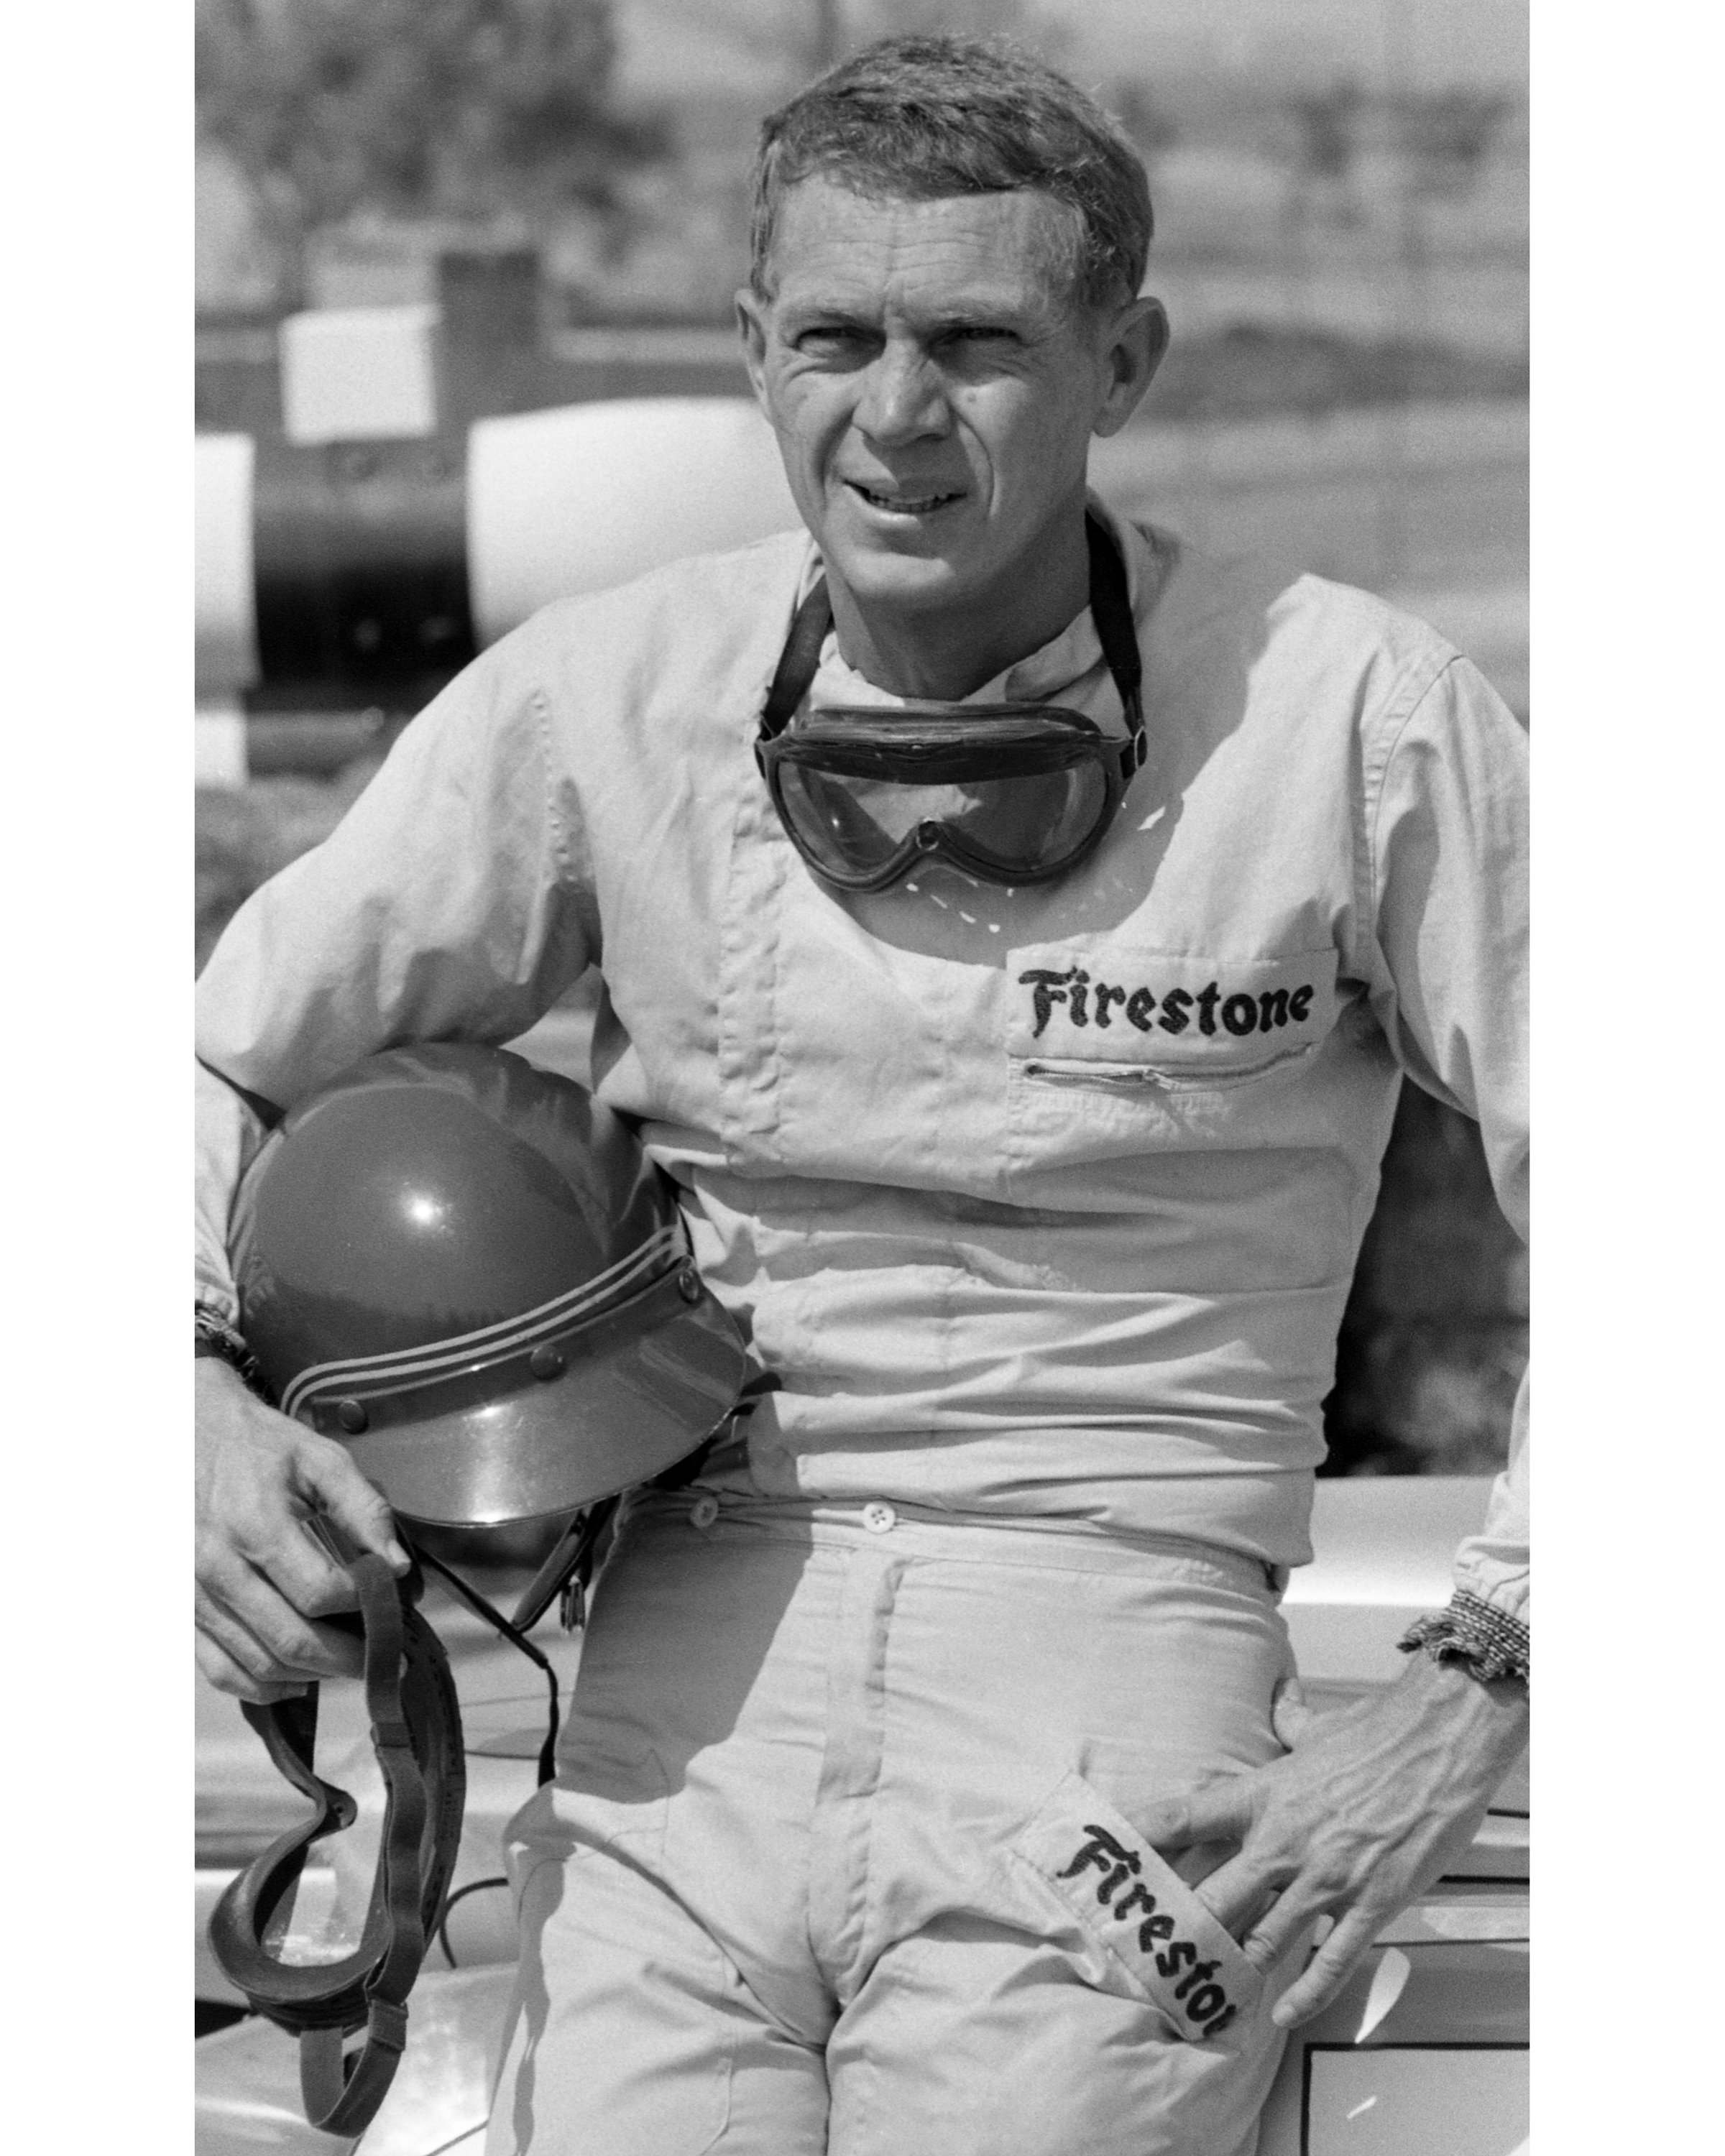 US-amerikanischer Schauspieler Steve McQueen (1930-1980), im Firestone-Rennanzug, am Riverside Raceway, Riverside, Kalifornien, Juli 1966. | Quelle: Getty Images